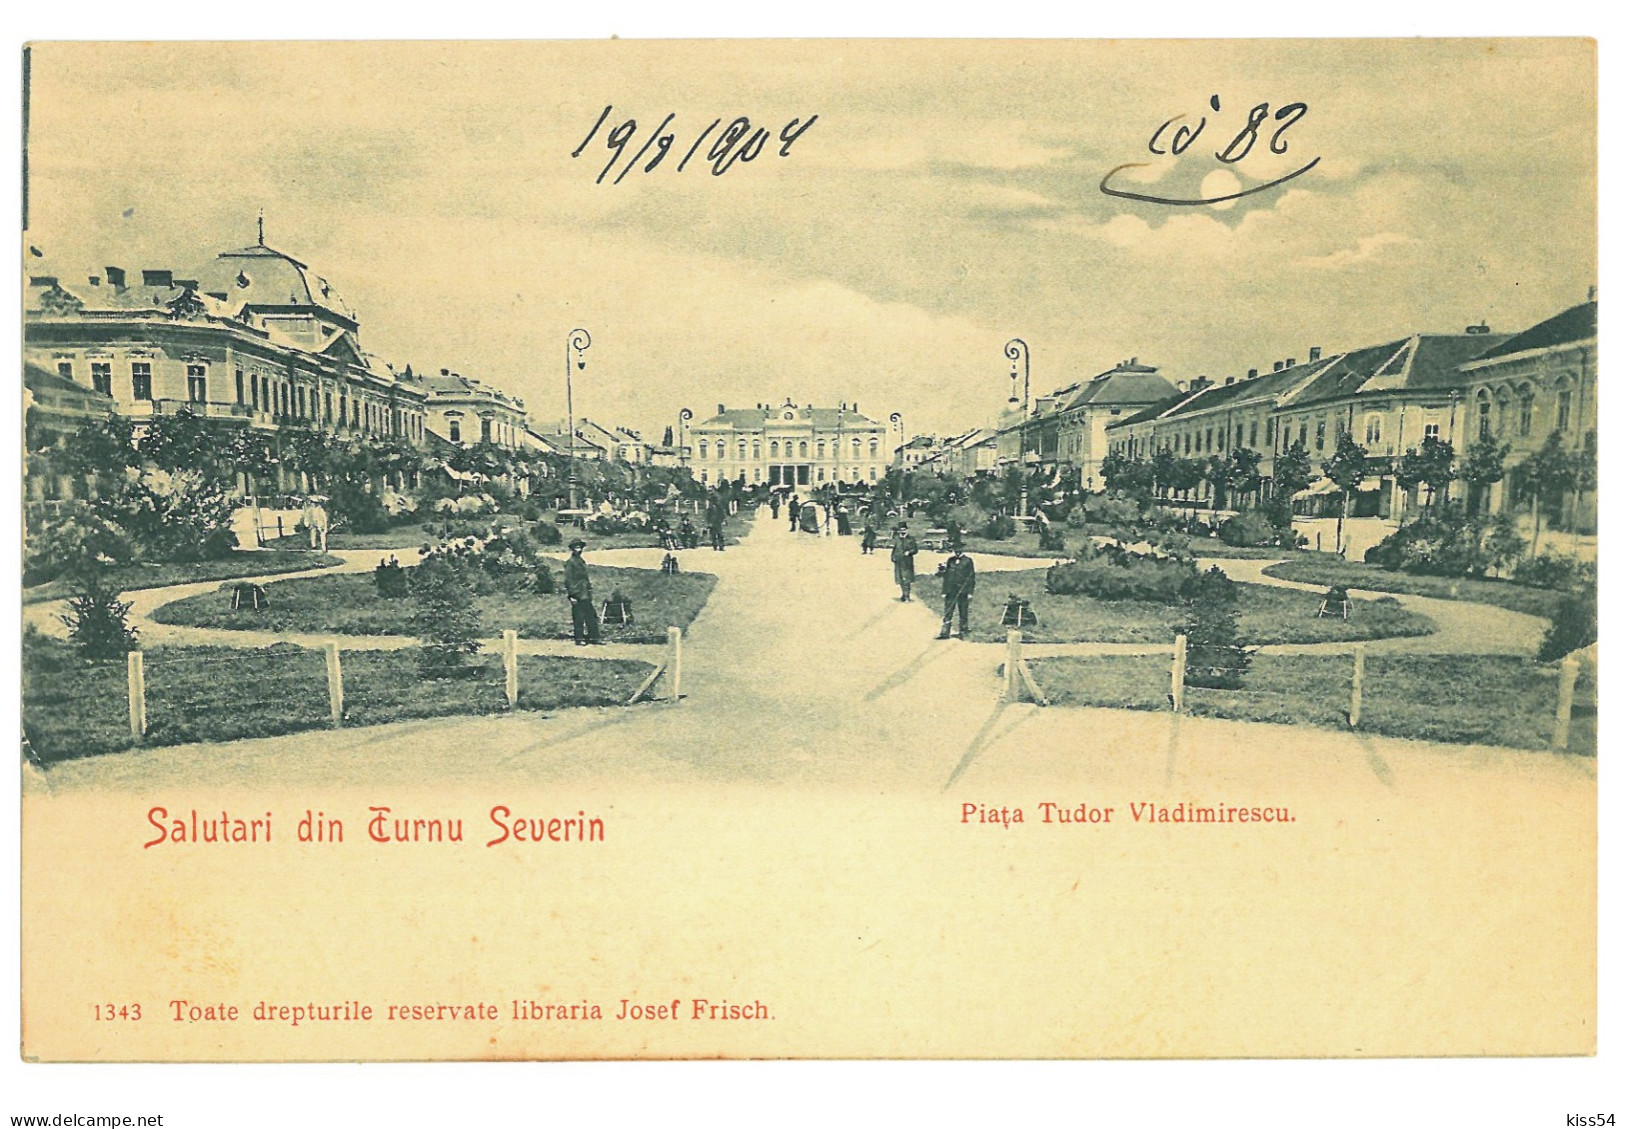 RO 999 - 24022 TURNU-SEVERIN, Market, Park, Litho, Romania - Old Postcard - Unused - Romania